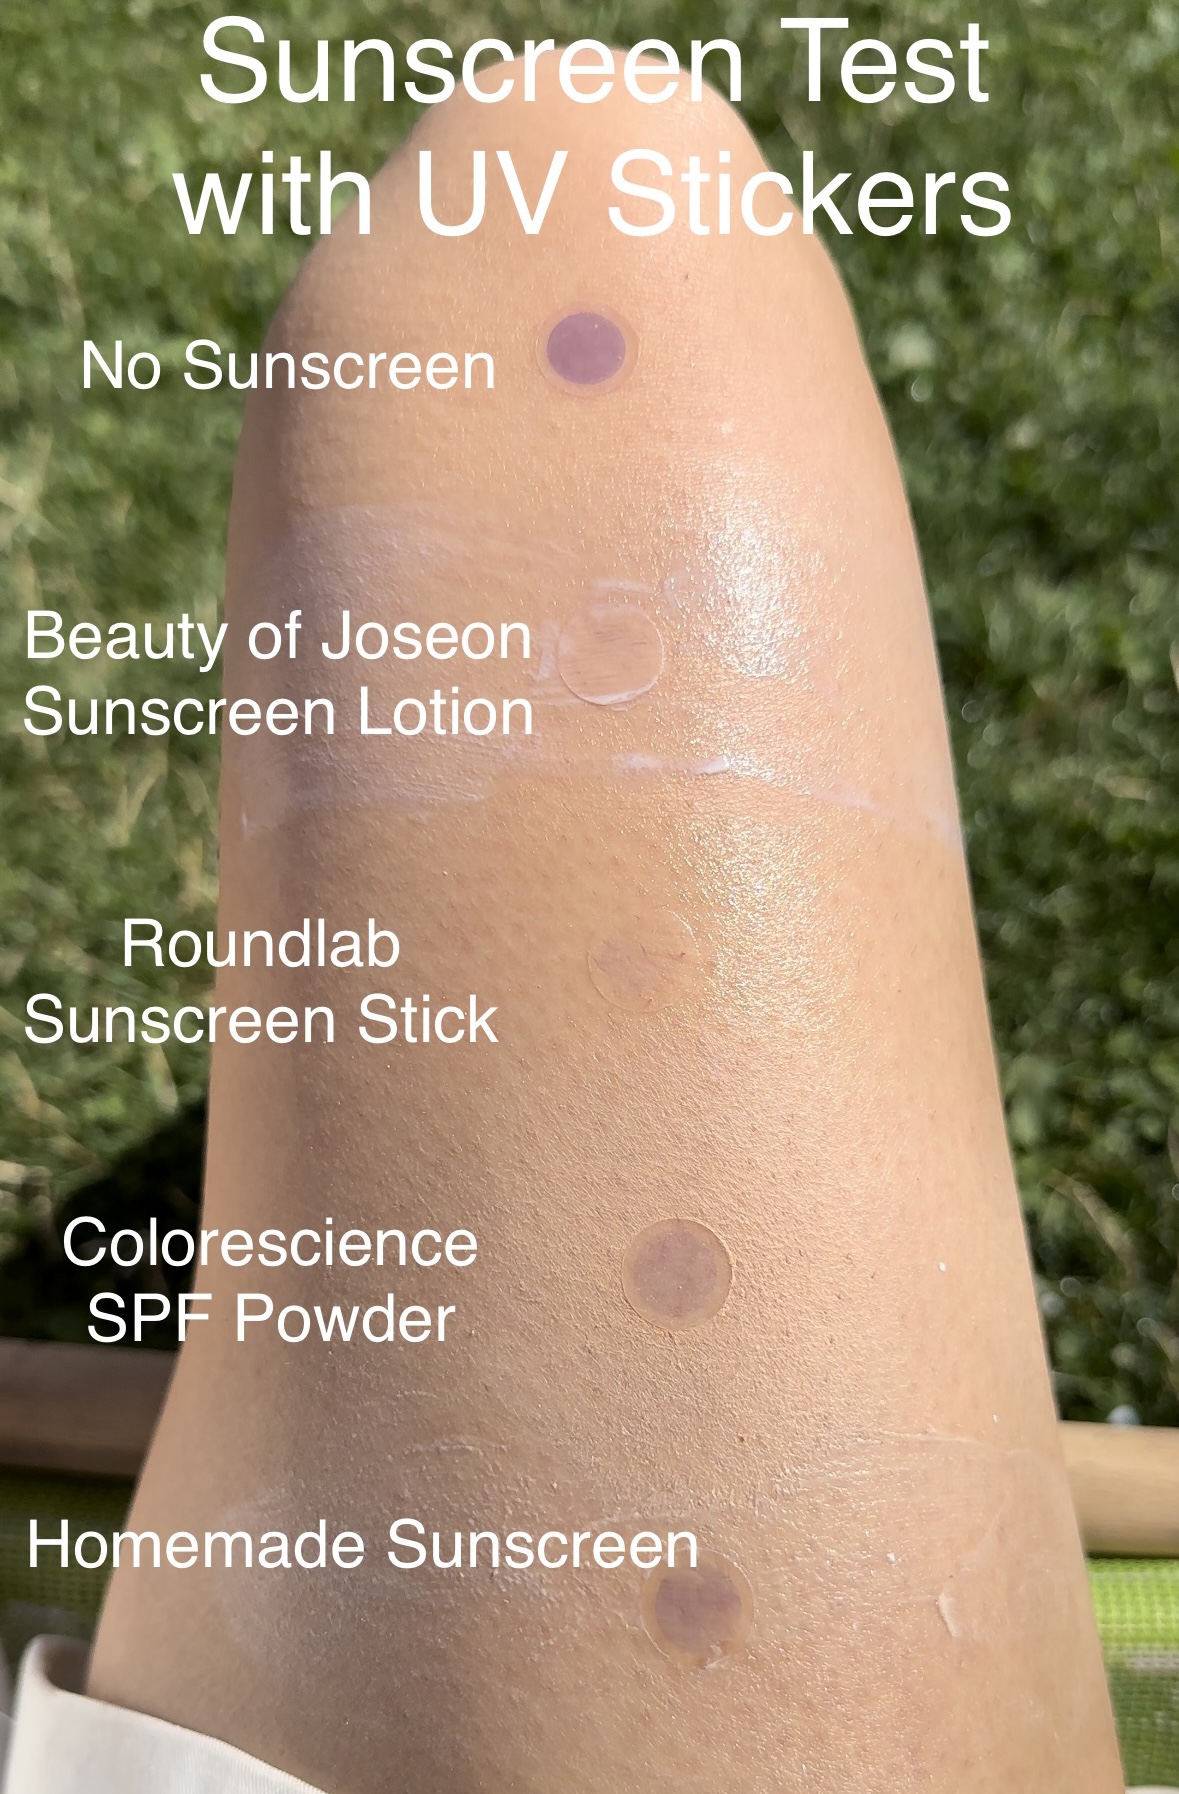 sunscreen test